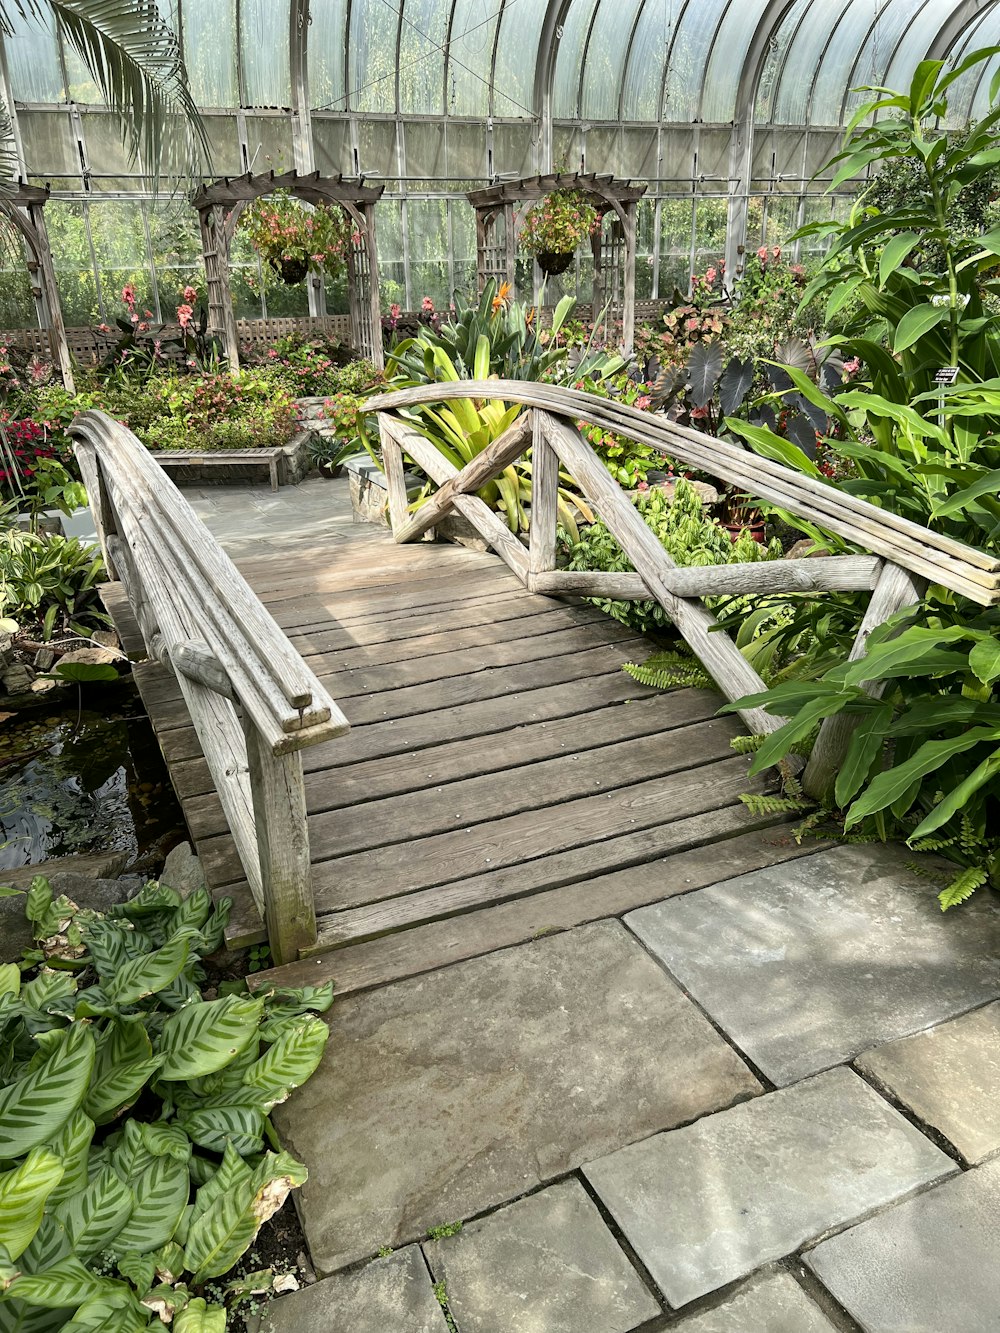 a wooden bridge over a garden